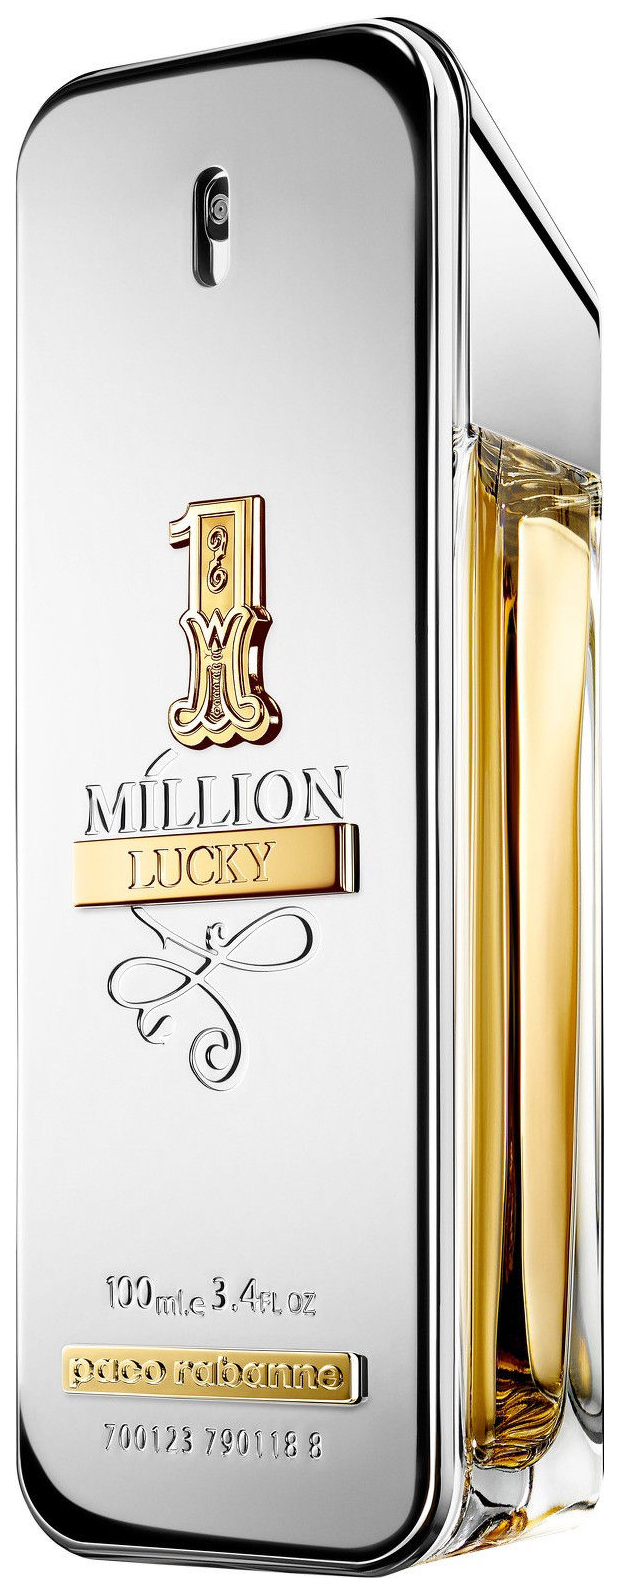 1 million lucky